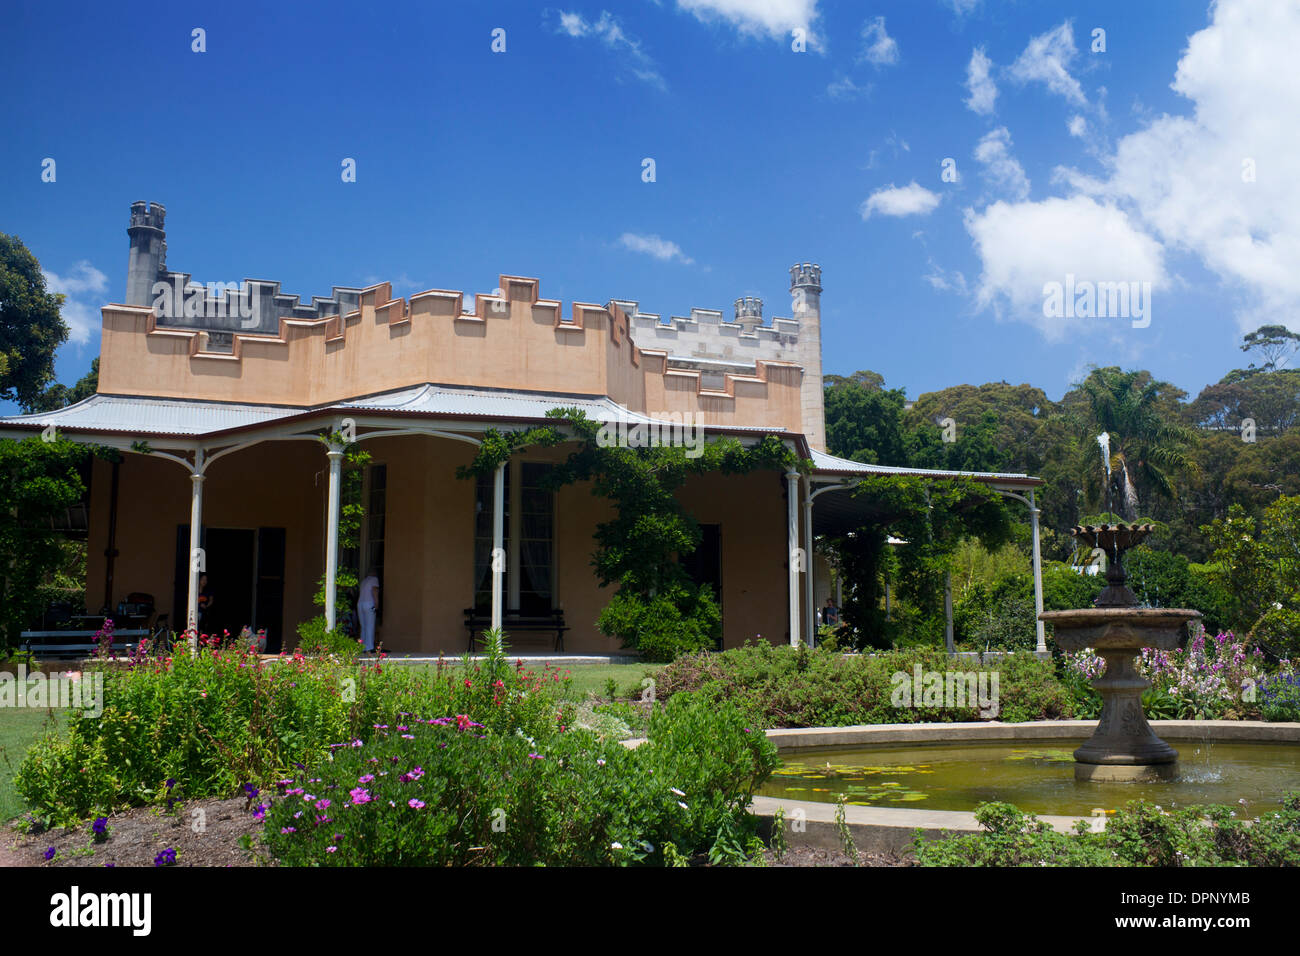 Vaucluse Vaucluse Maison et jardin de banlieue est Sydney NSW Australie Nouvelle Galles du Sud Banque D'Images